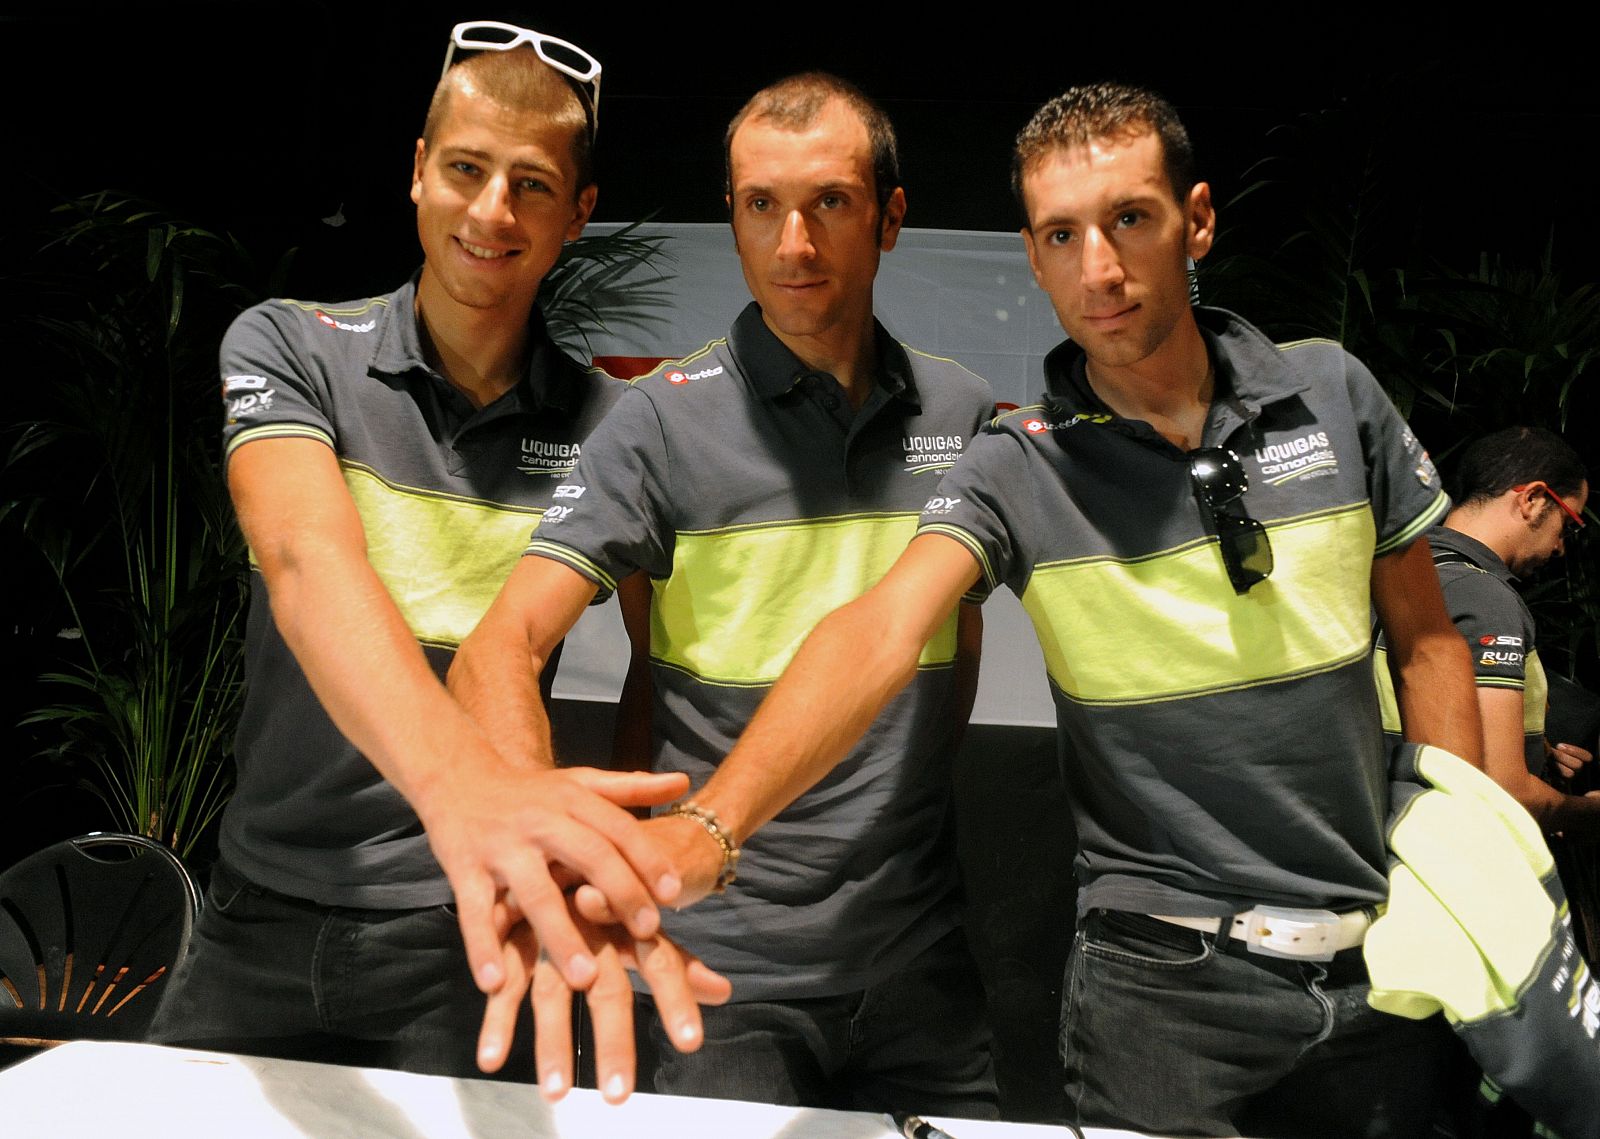 Los tres corredores estrella del Liquigas, Peter Sagan, Ivan Basso y Vincenzo Nibali, posan ante las cámaras.